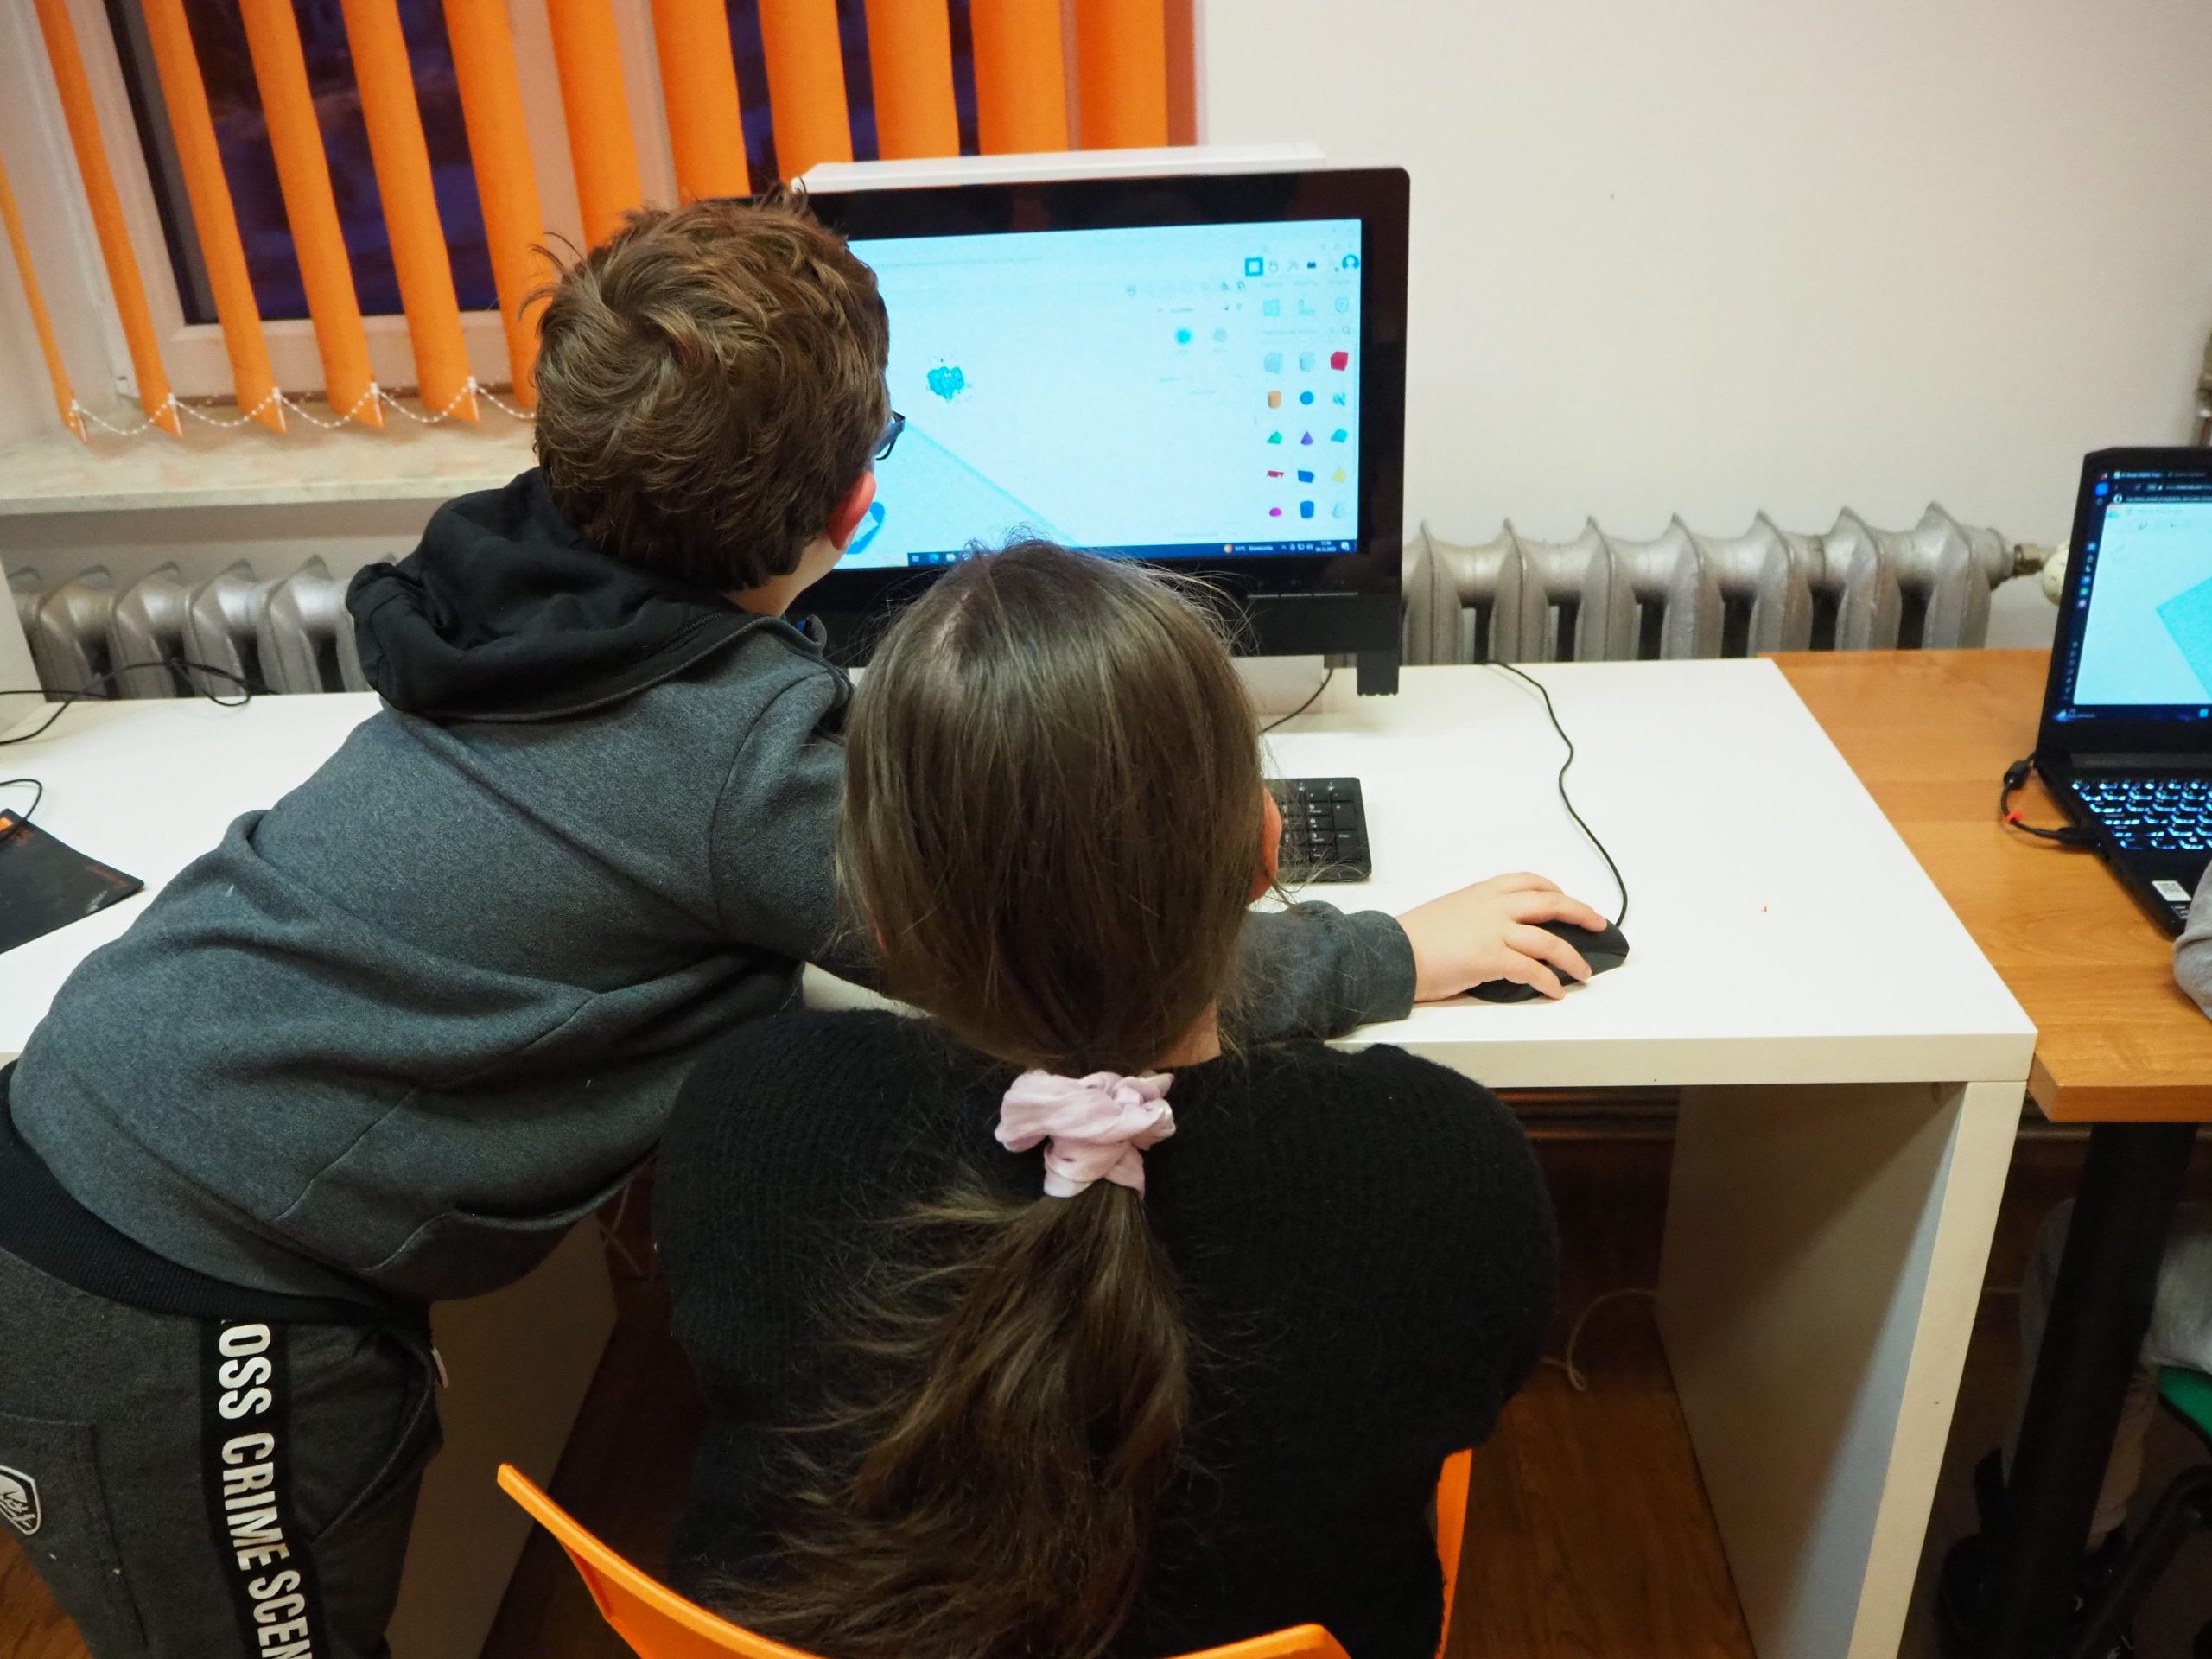 Chłopiec i dziewczynka siedzą przy komputerach.